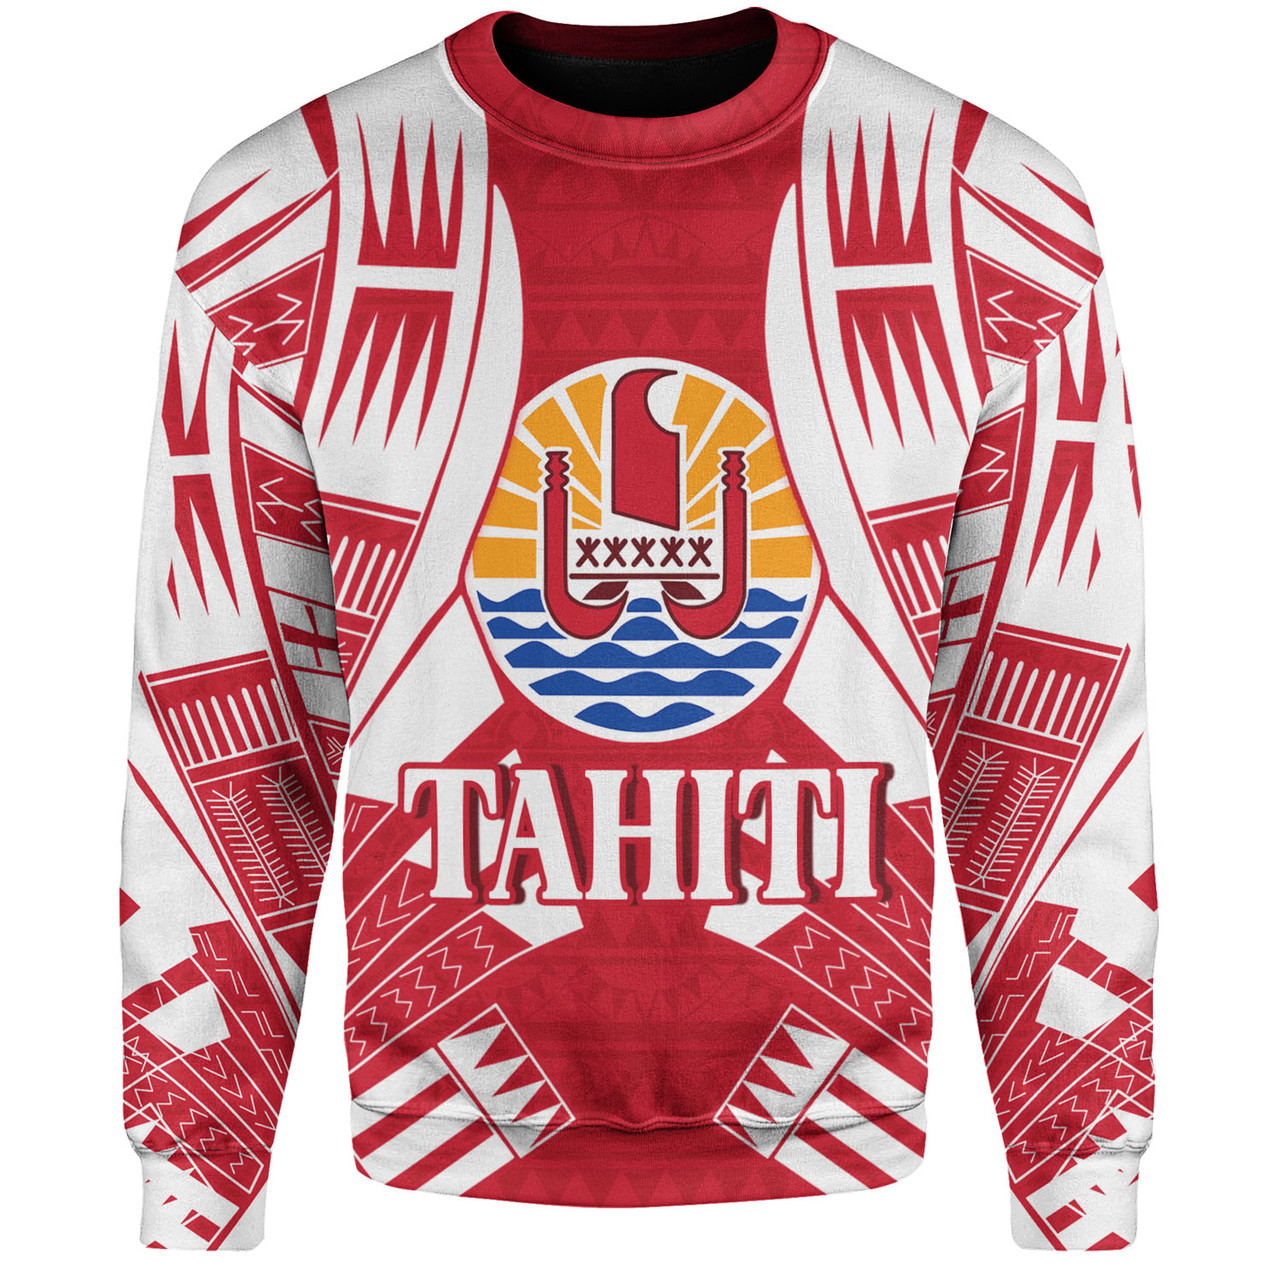 Tahiti Custom Personalised Sweatshirt Tattoo Style